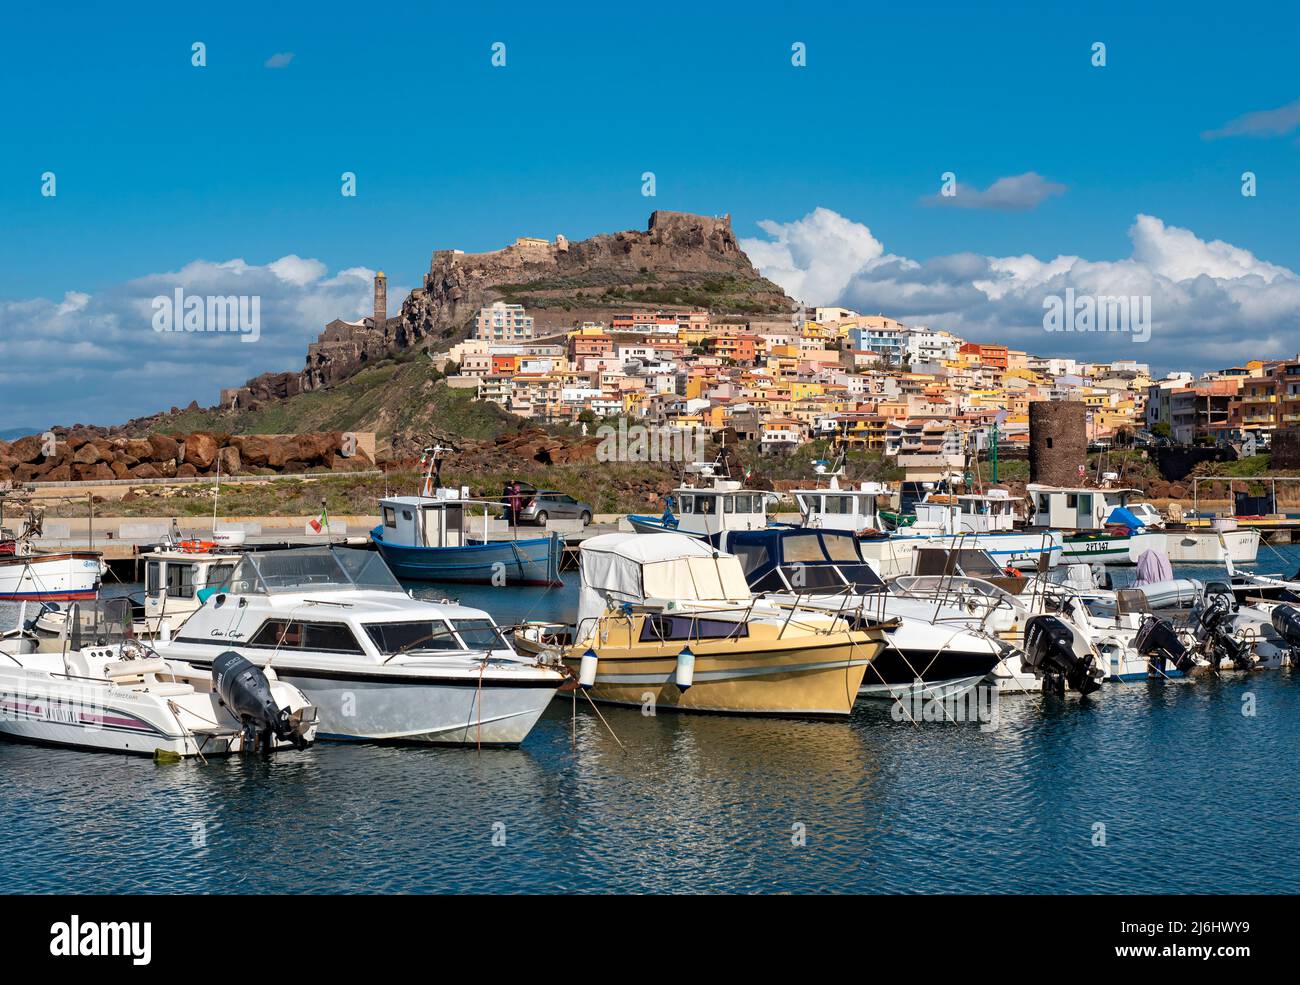 Boats in Castelsardo port, Sardinia, Italy Stock Photo